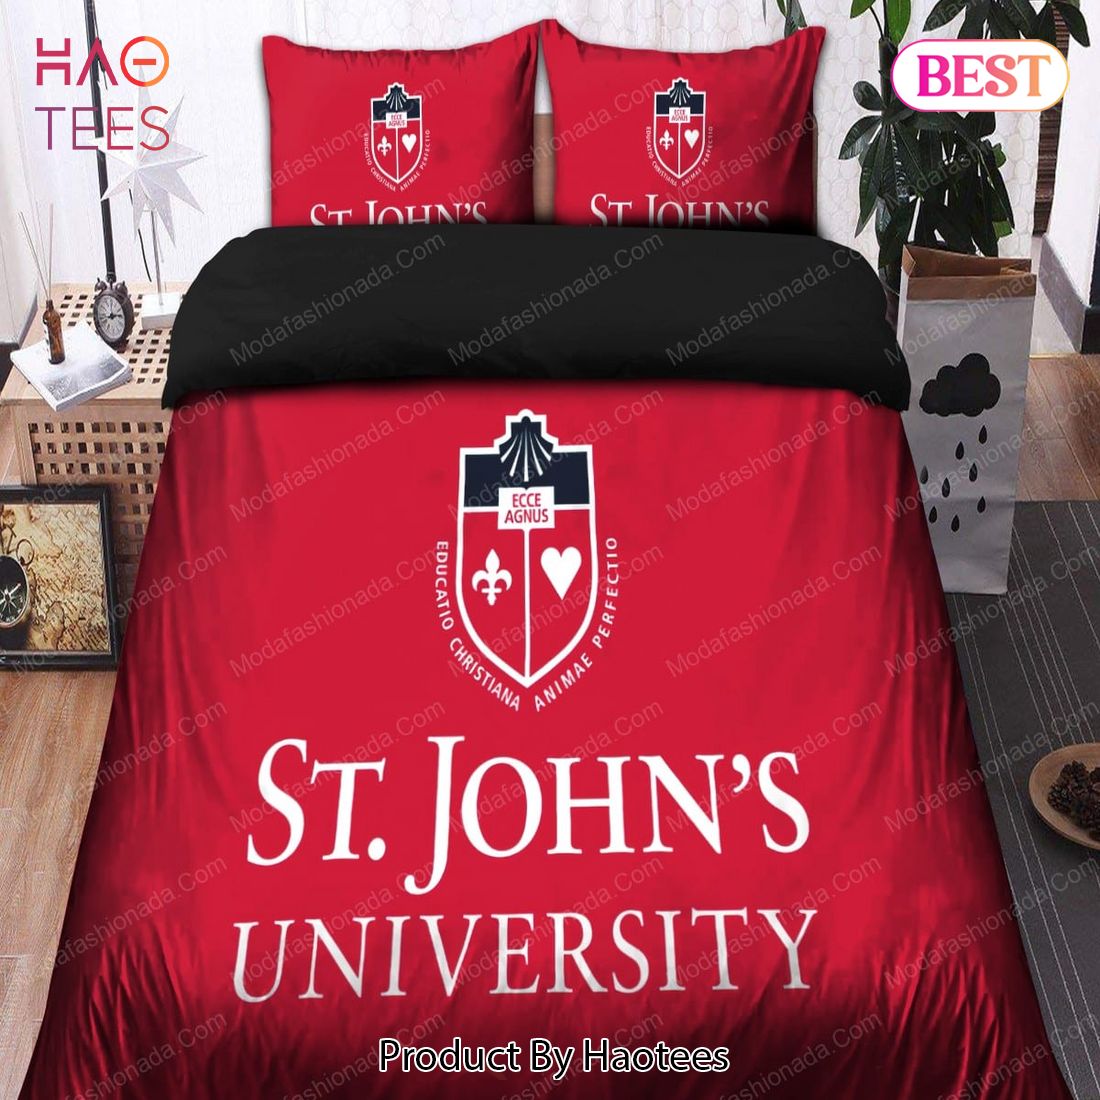 Buy St John's University Bedding Sets Bed Sets, Bedroom Sets, Comforter Sets, Duvet Cover, Bedspread